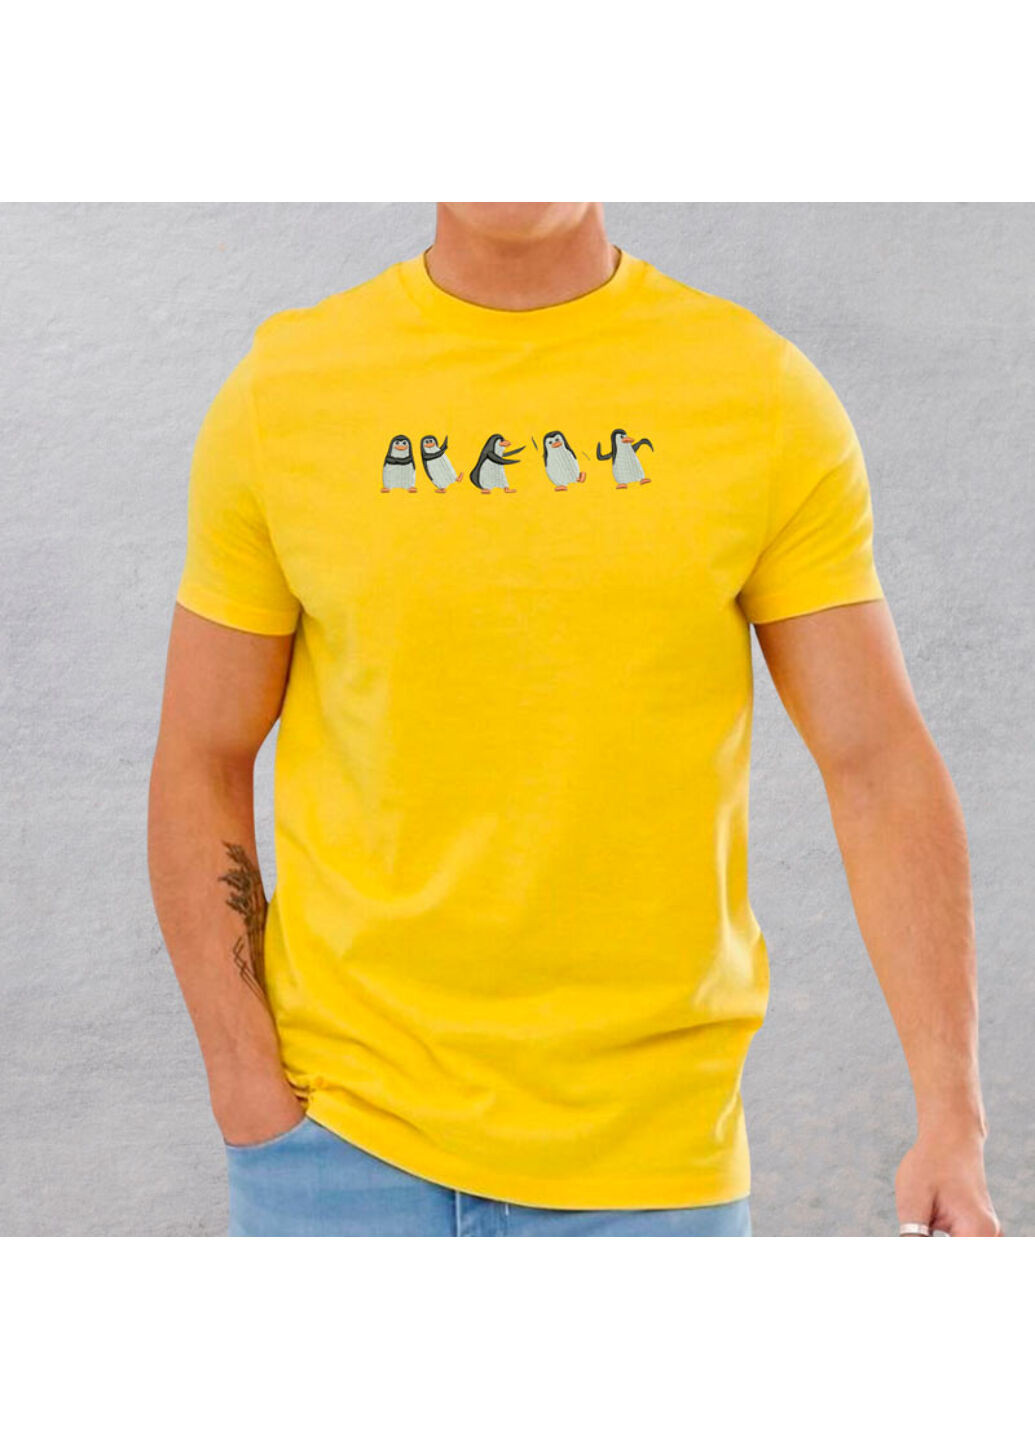 Жовта футболка з вишивкою пінгвінів 01-5 чоловіча жовтий xl No Brand